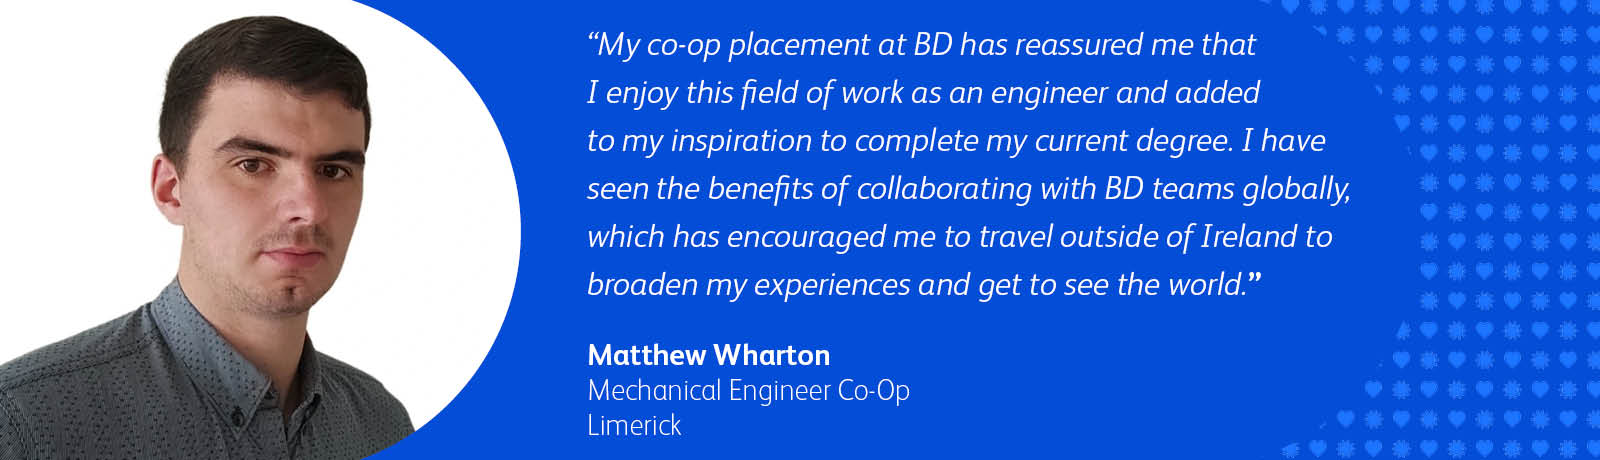 Matthew Wharton, Mechanical Engineer Co-Op at BD Limerick